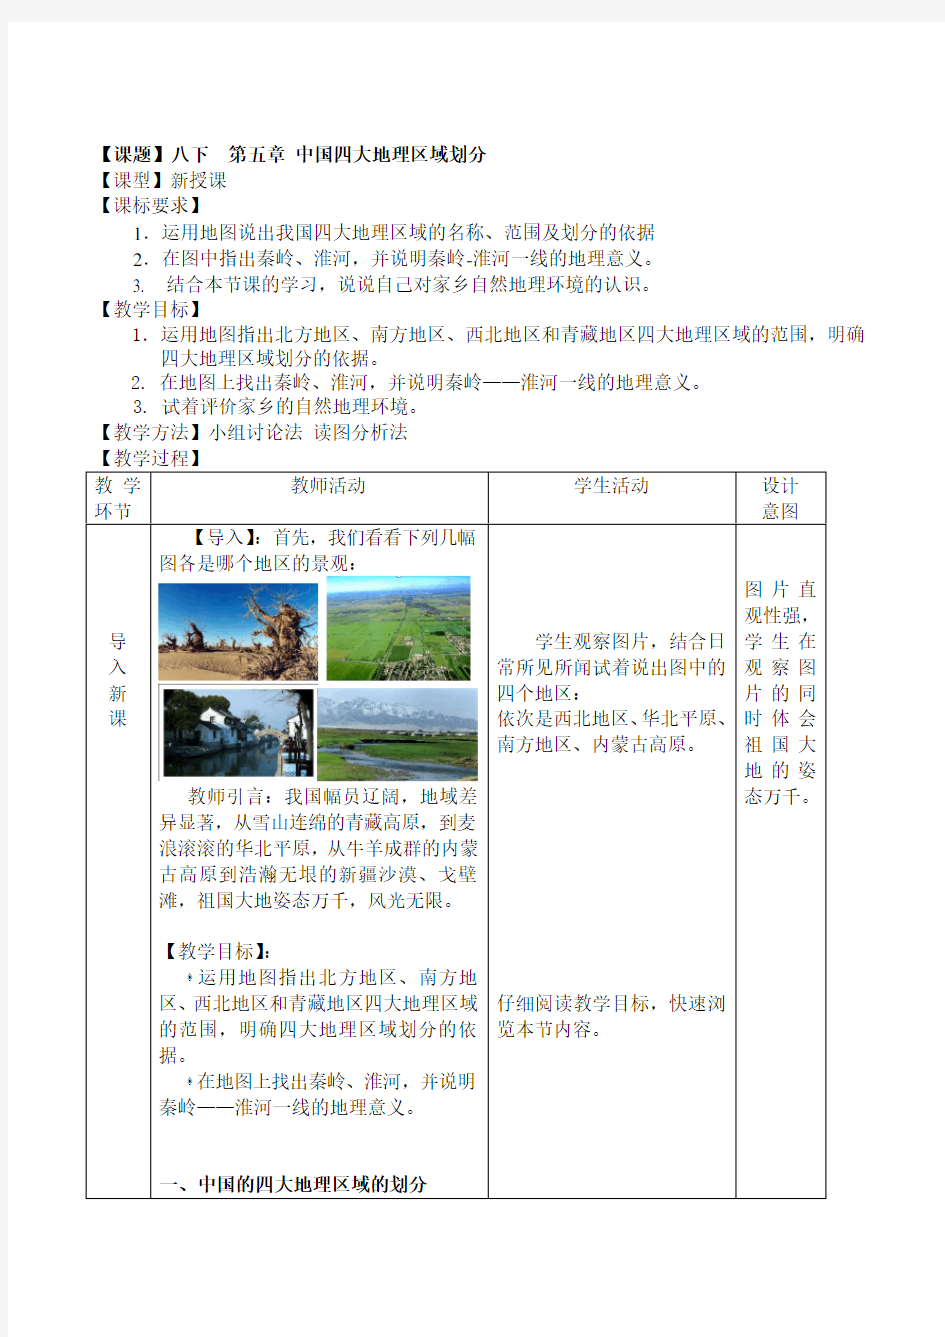 八年级地理下册第五章《中国四大地理区域划分》获奖教案